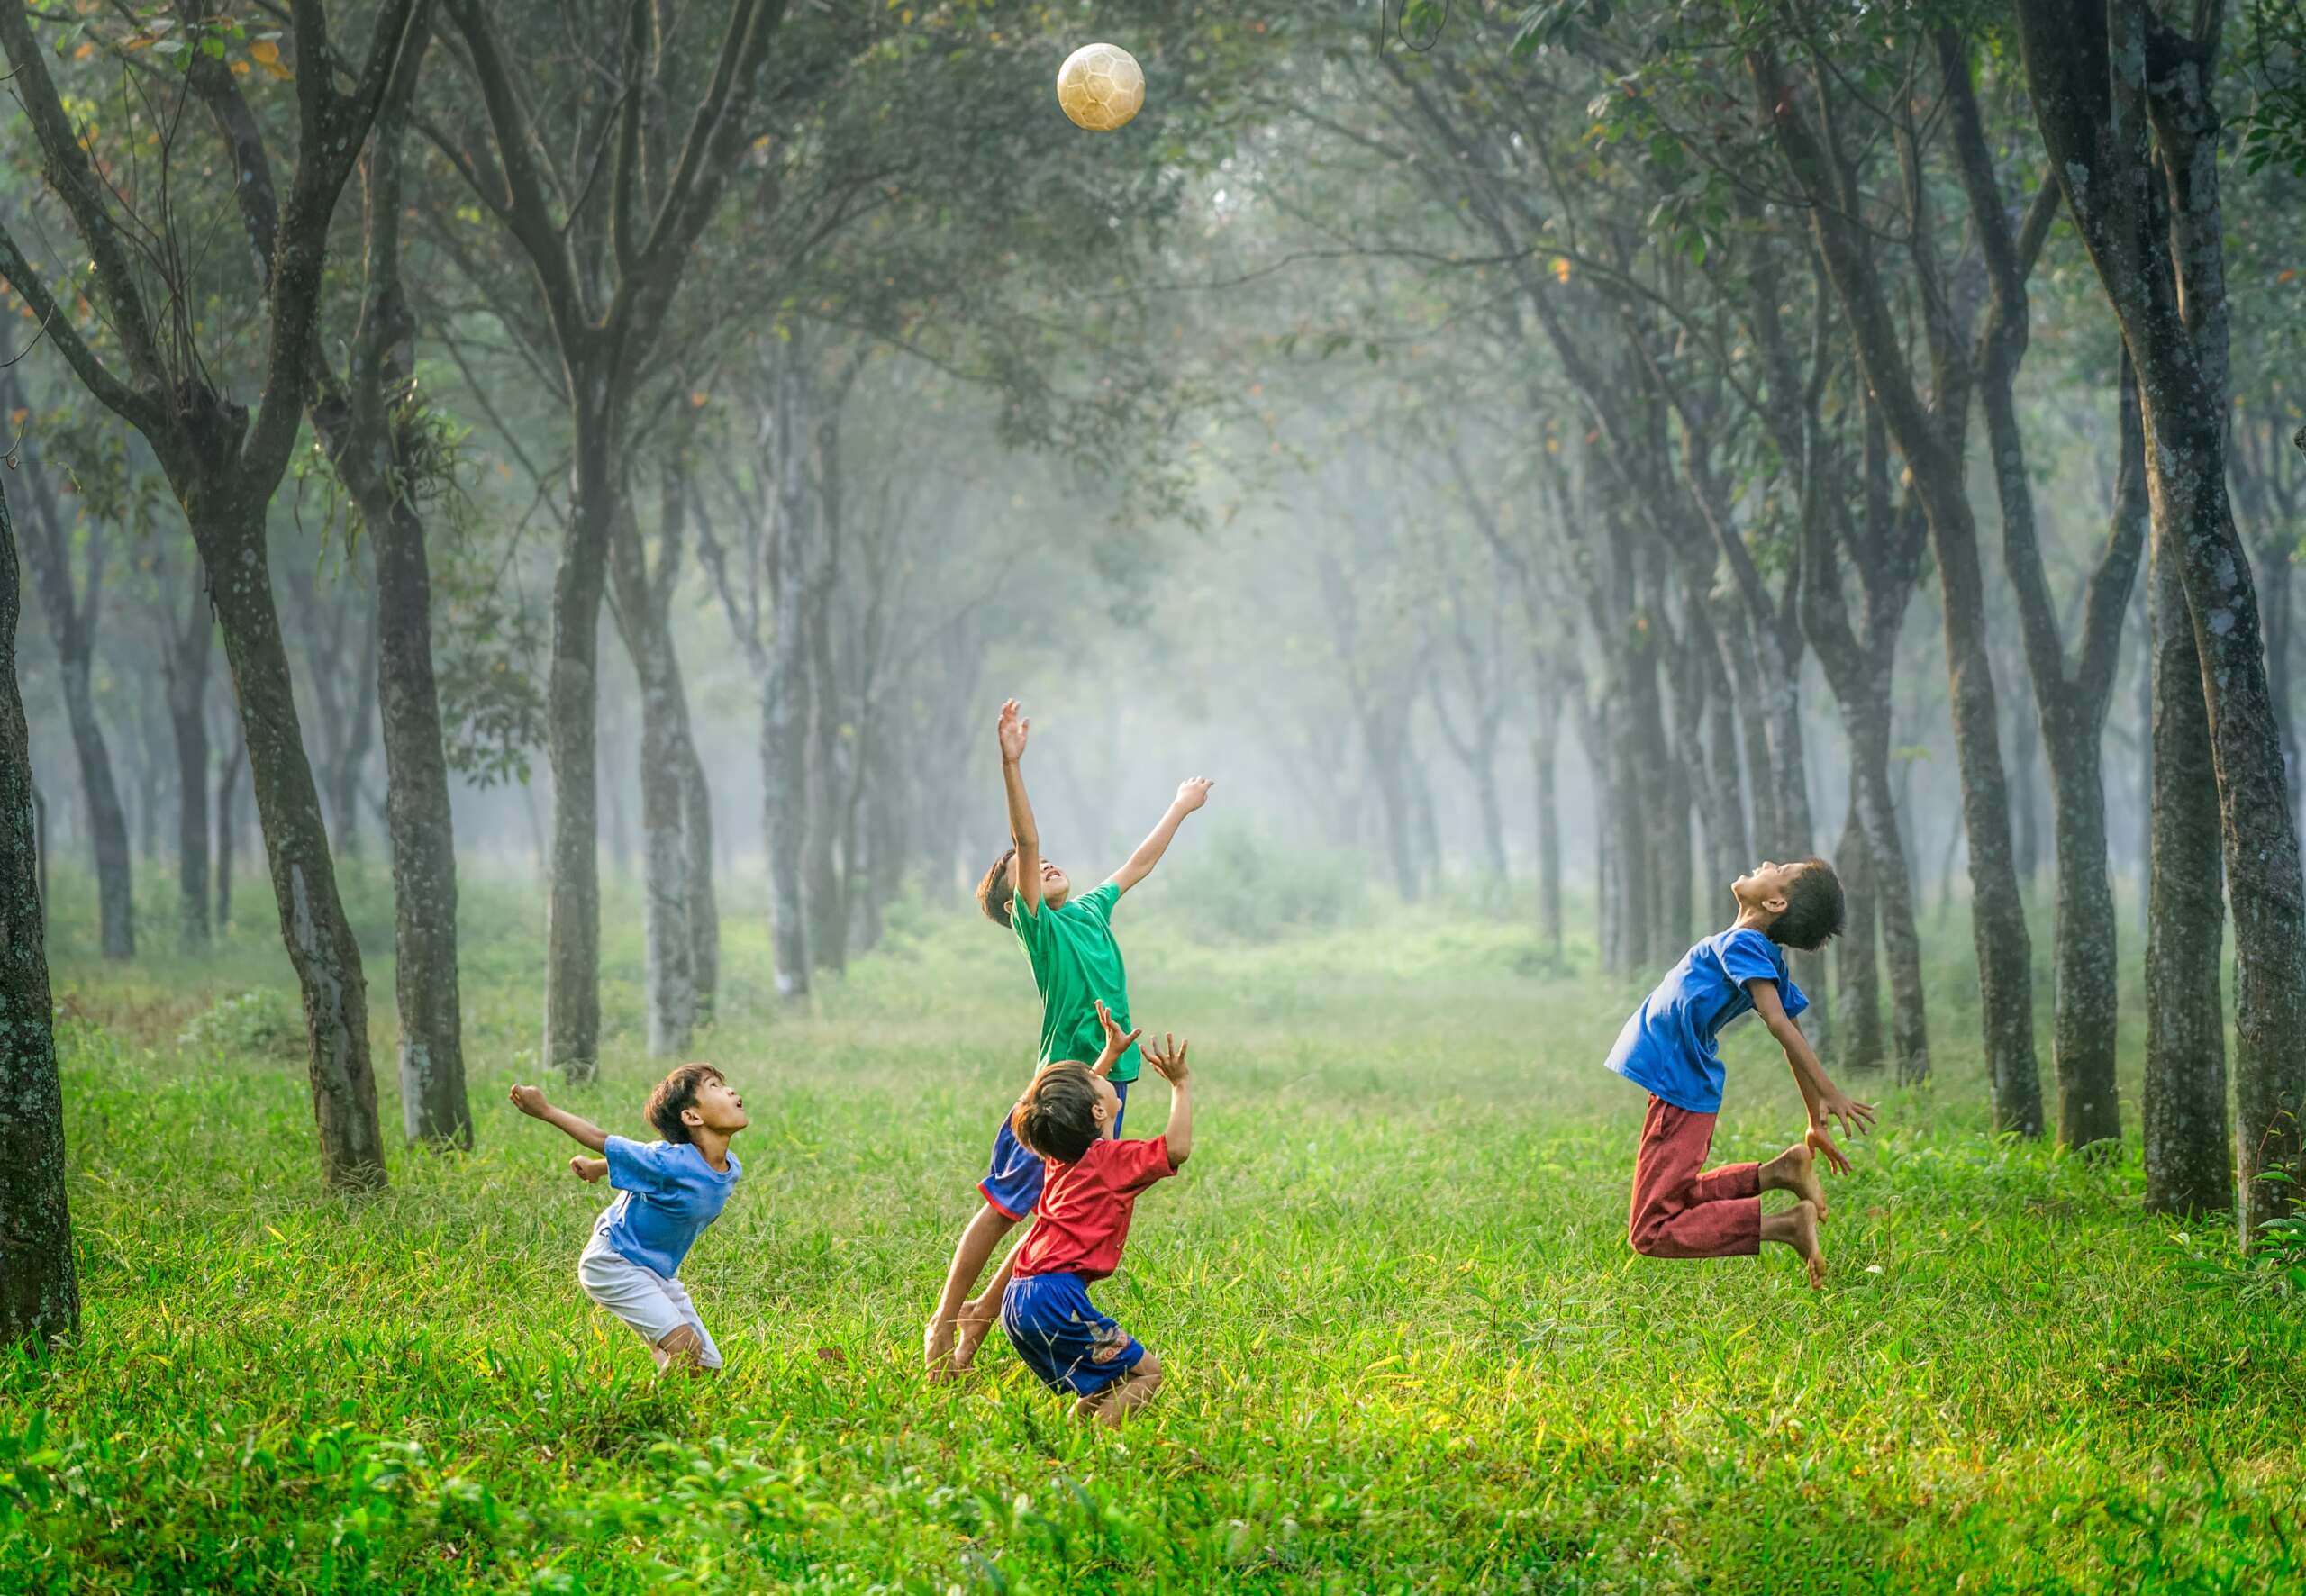 Niños jugando y saltando con una pelota